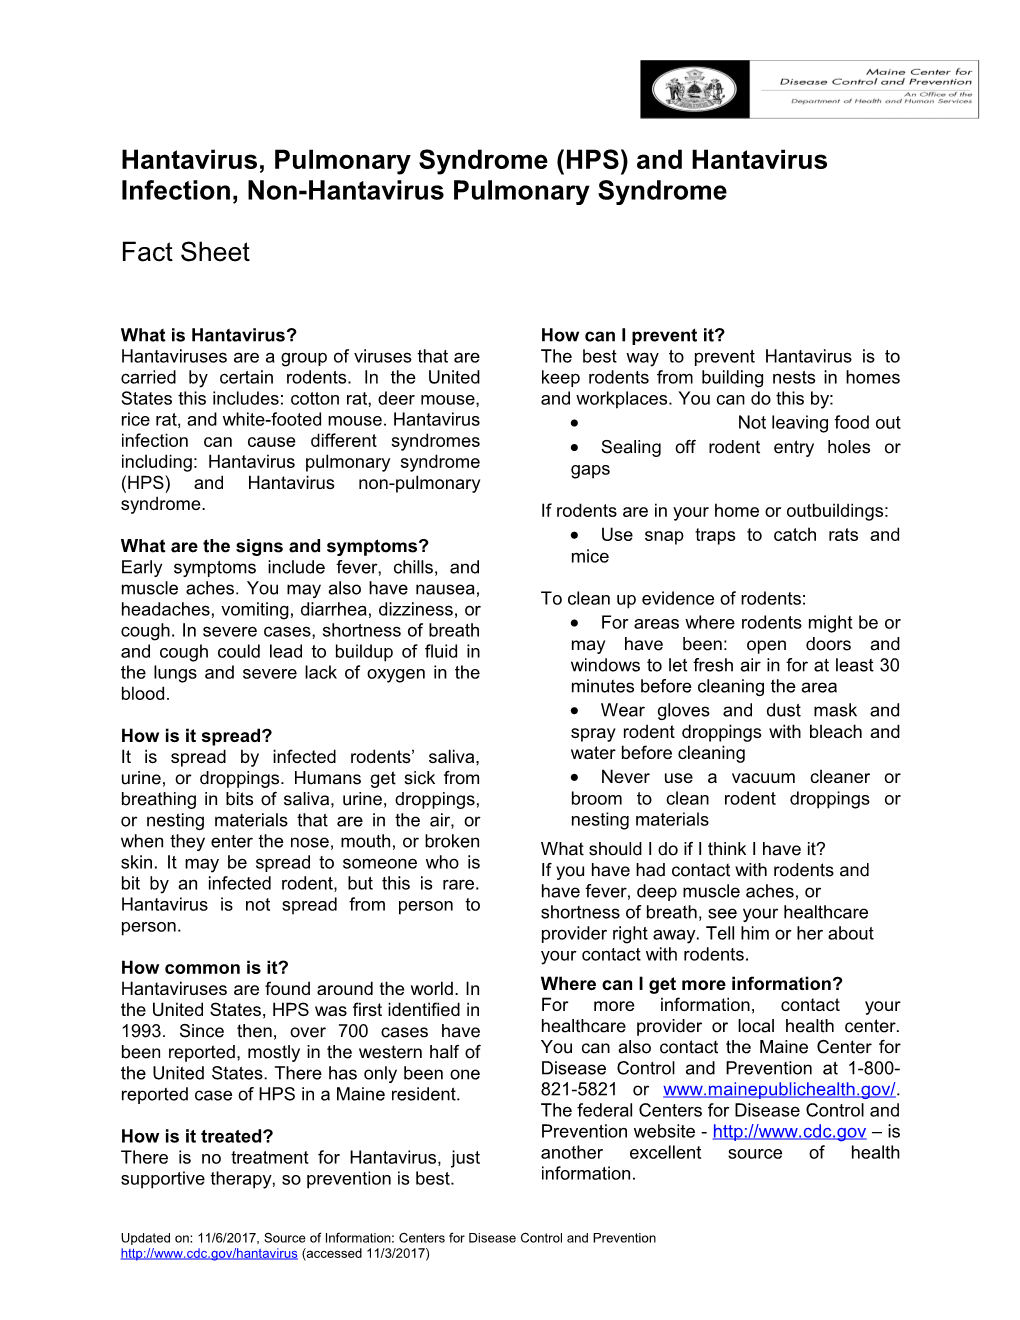 Hantavirus, Pulmonary Syndrome (HPS) and Hantavirus Infection, Non-Hantavirus Pulmonary